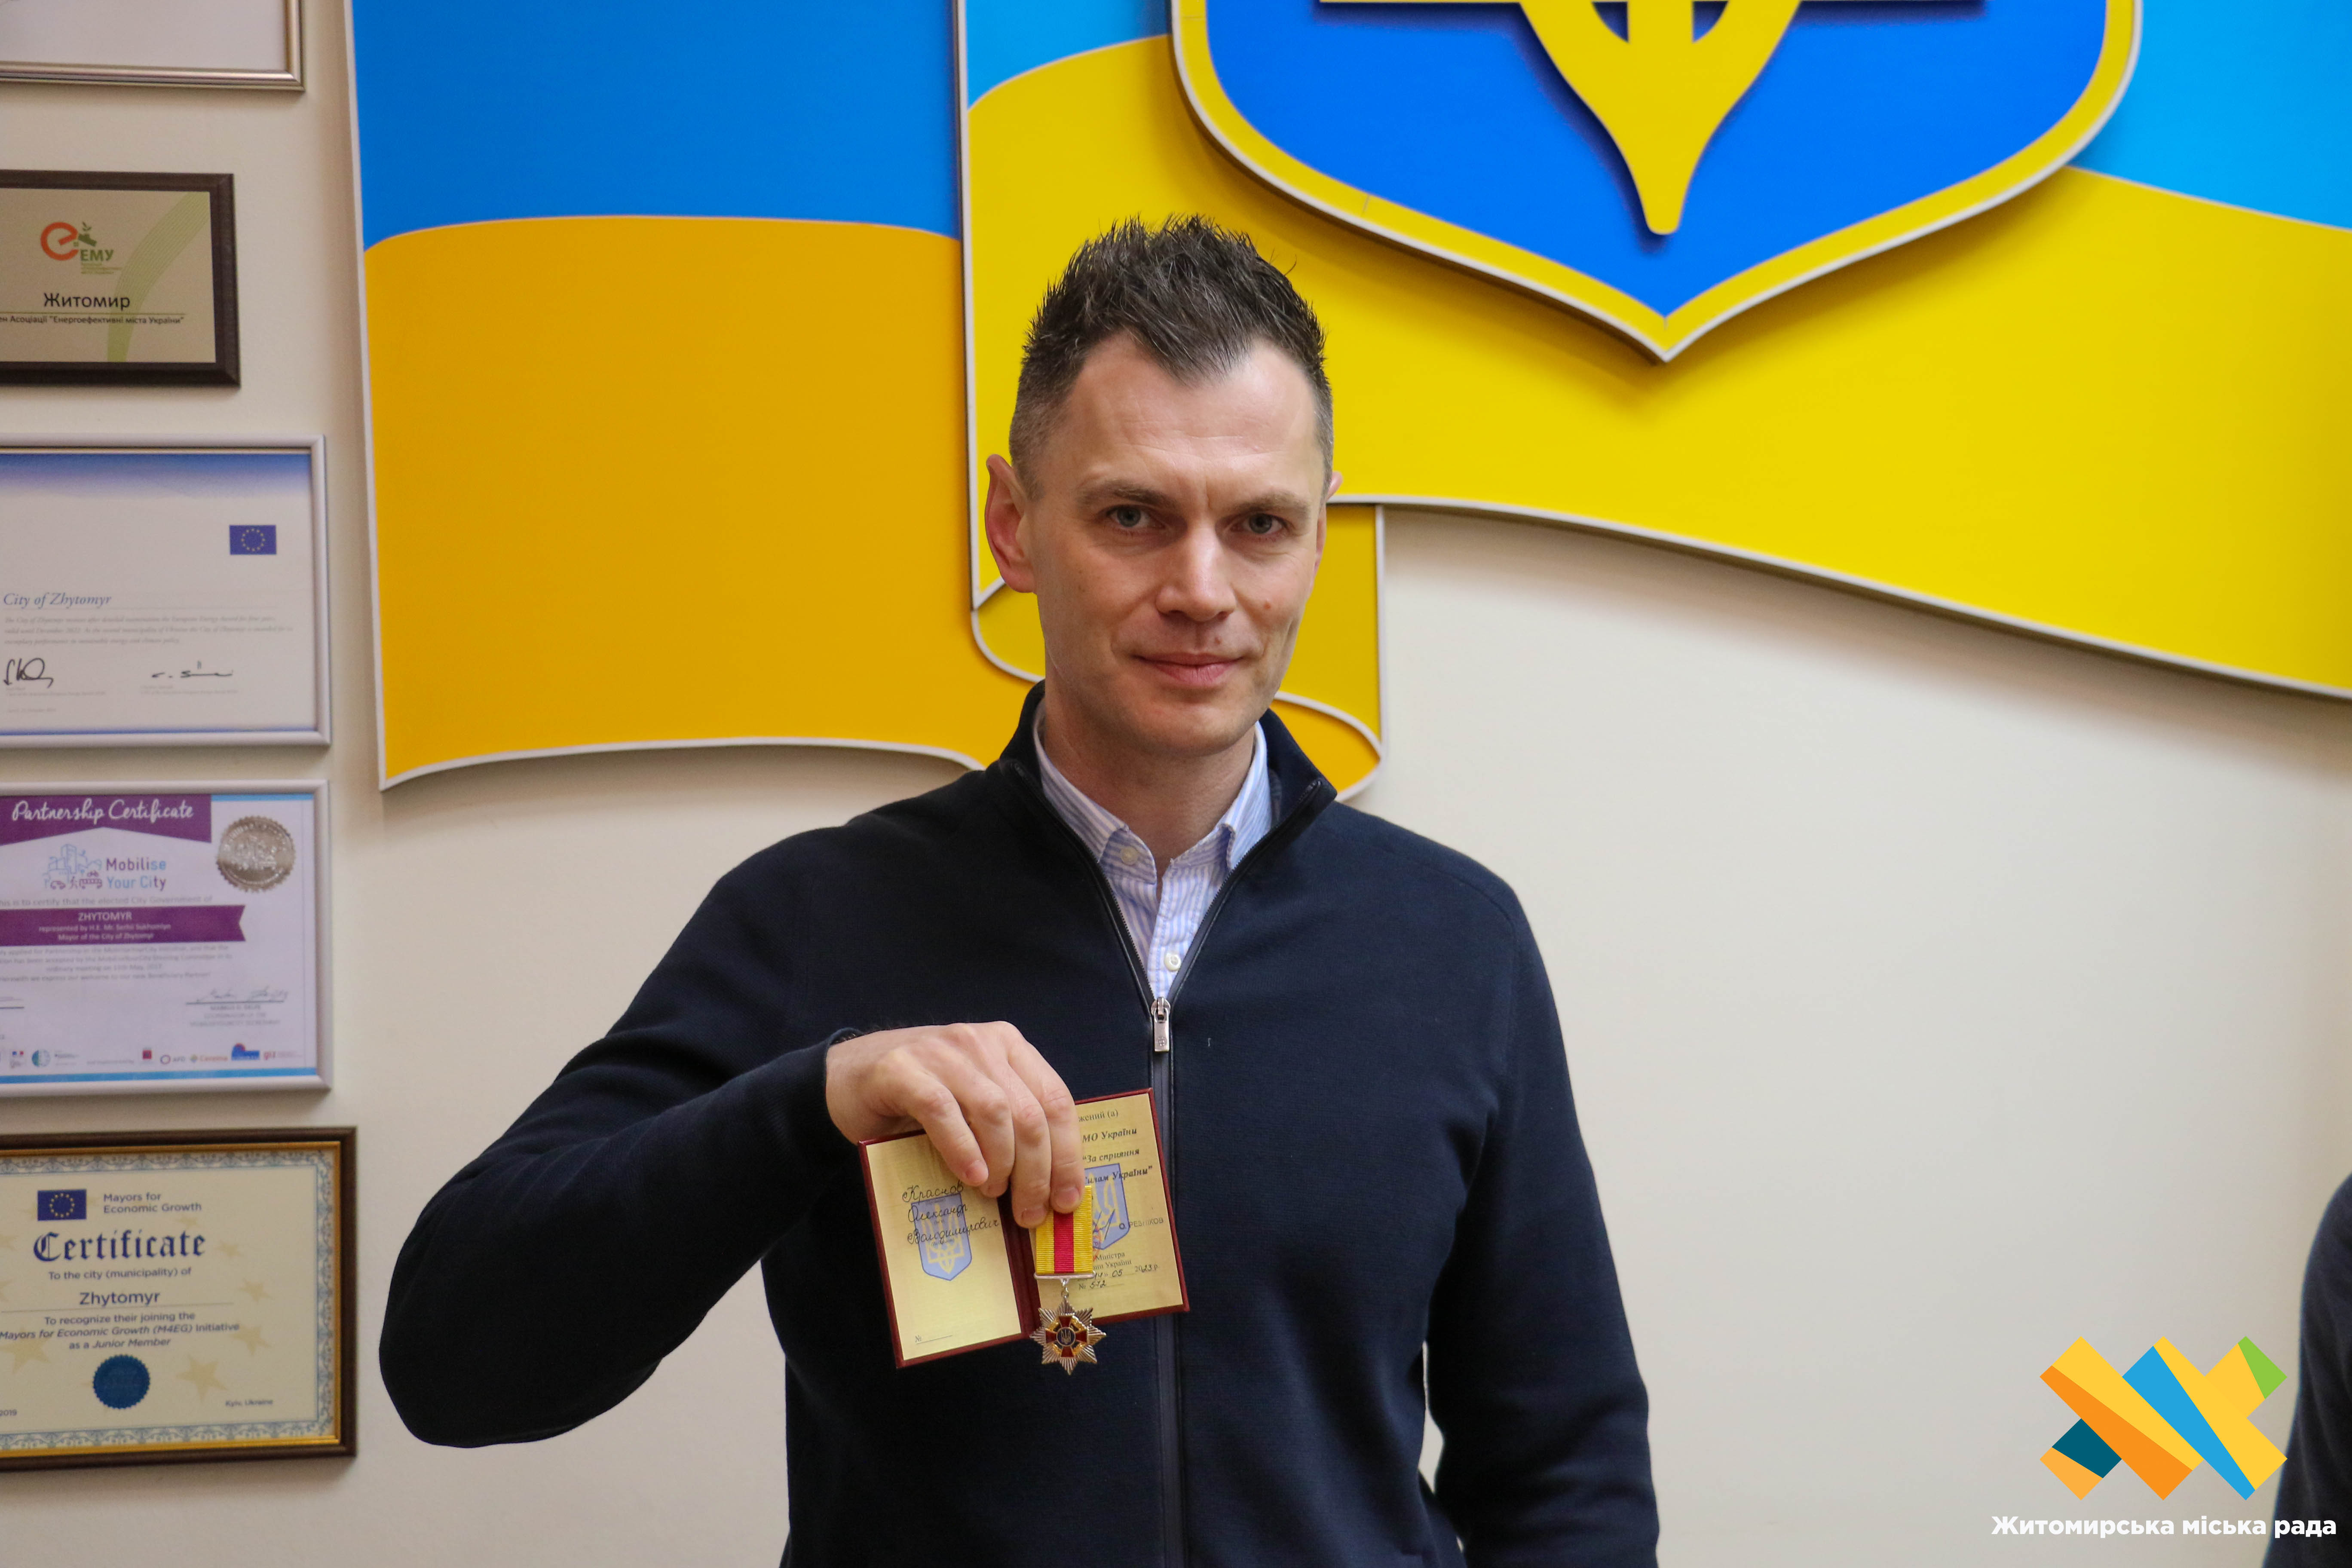 Волонтеру Олександру Краснову вручили відзнаку Міністерства Оборони України